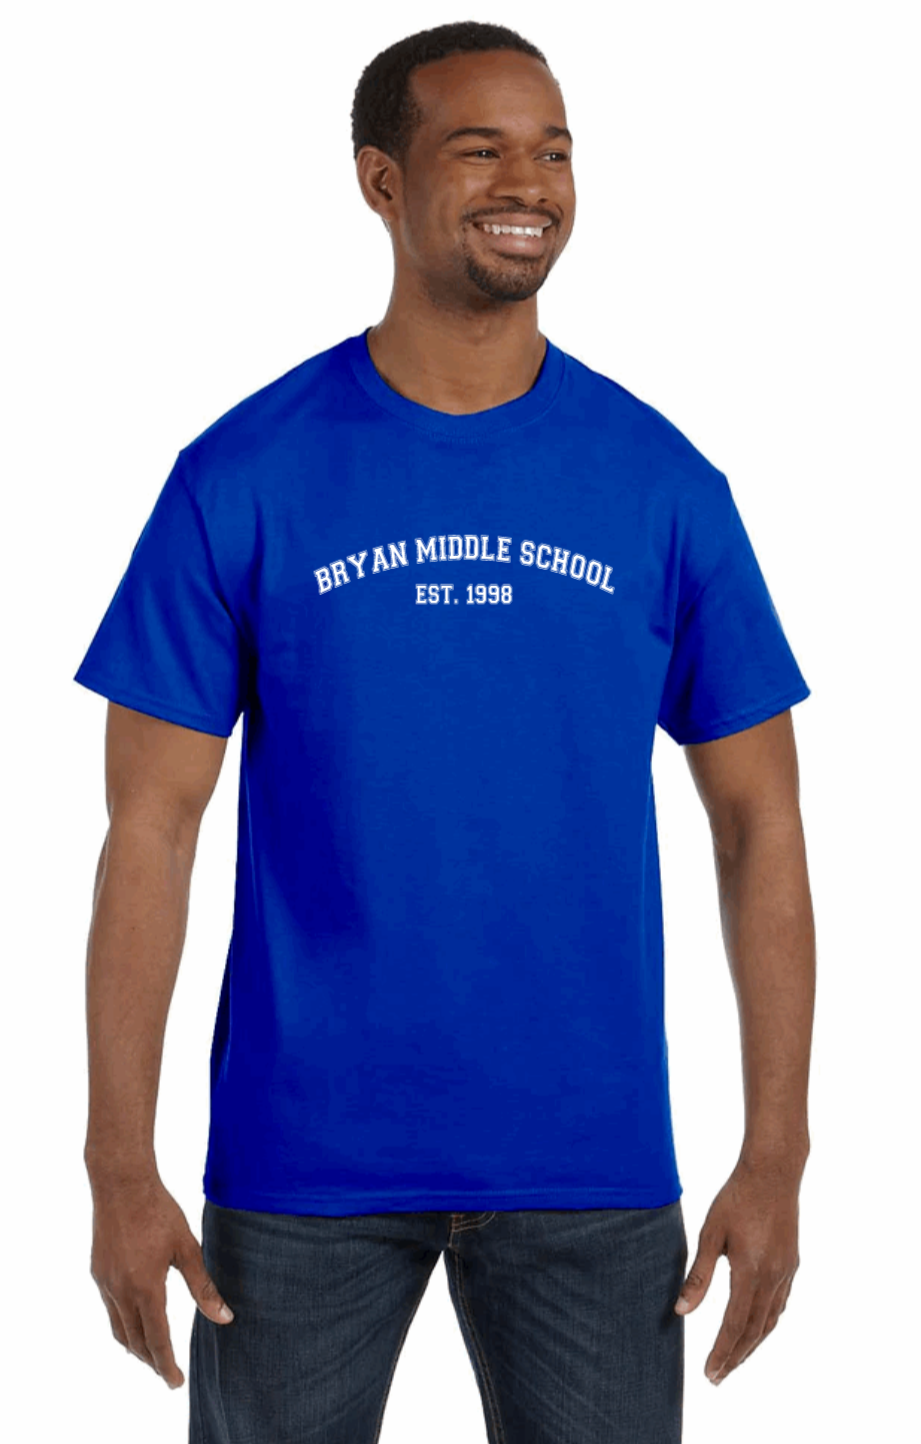 Bryan Middle School – Tees & Things By Macey